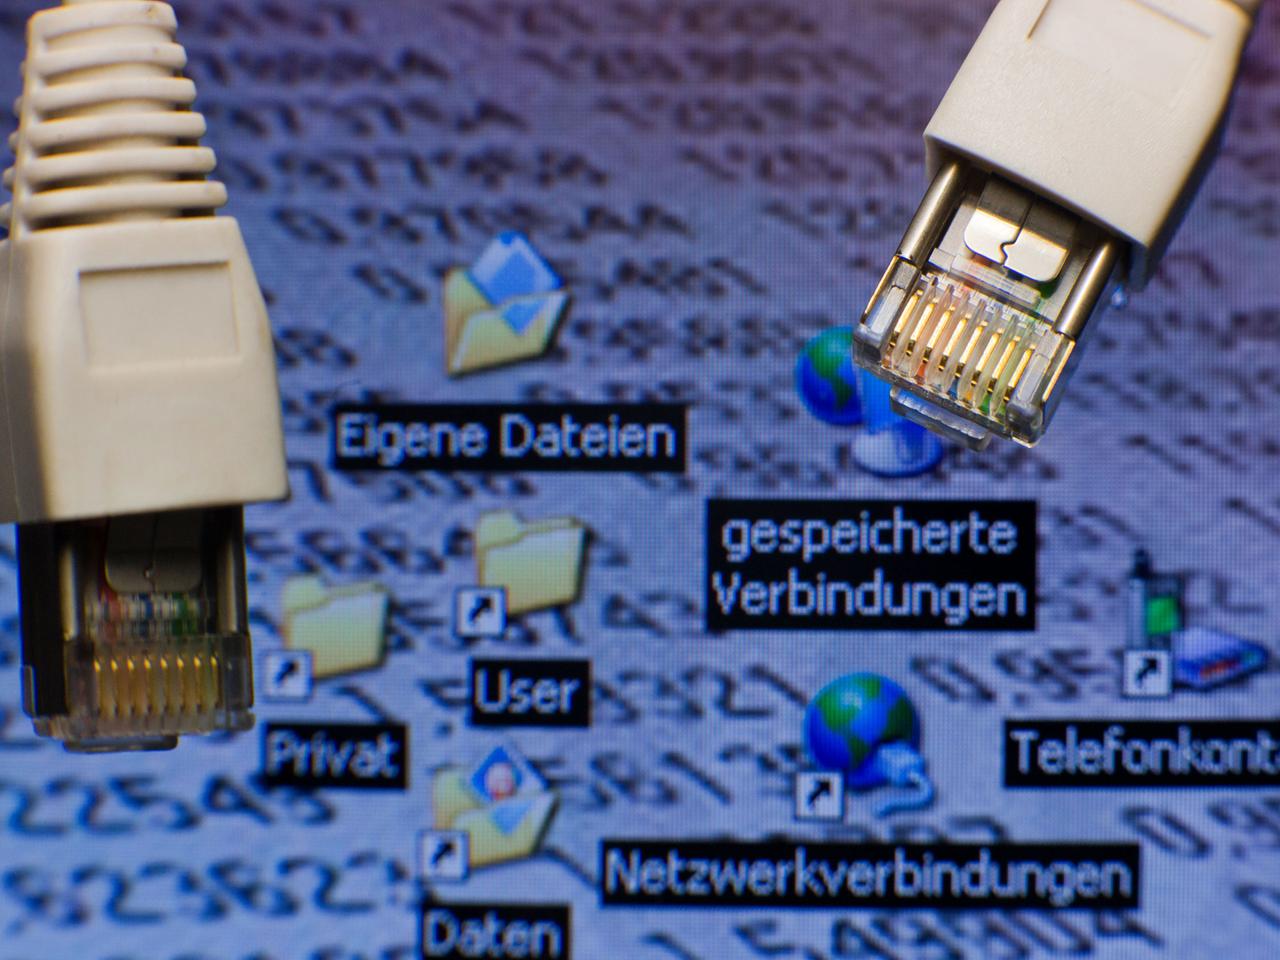 Netzwerkstecker sind vor einem Computer-Bildschirm mit Symbolen für "gespeicherte Verbindungen" zu sehen